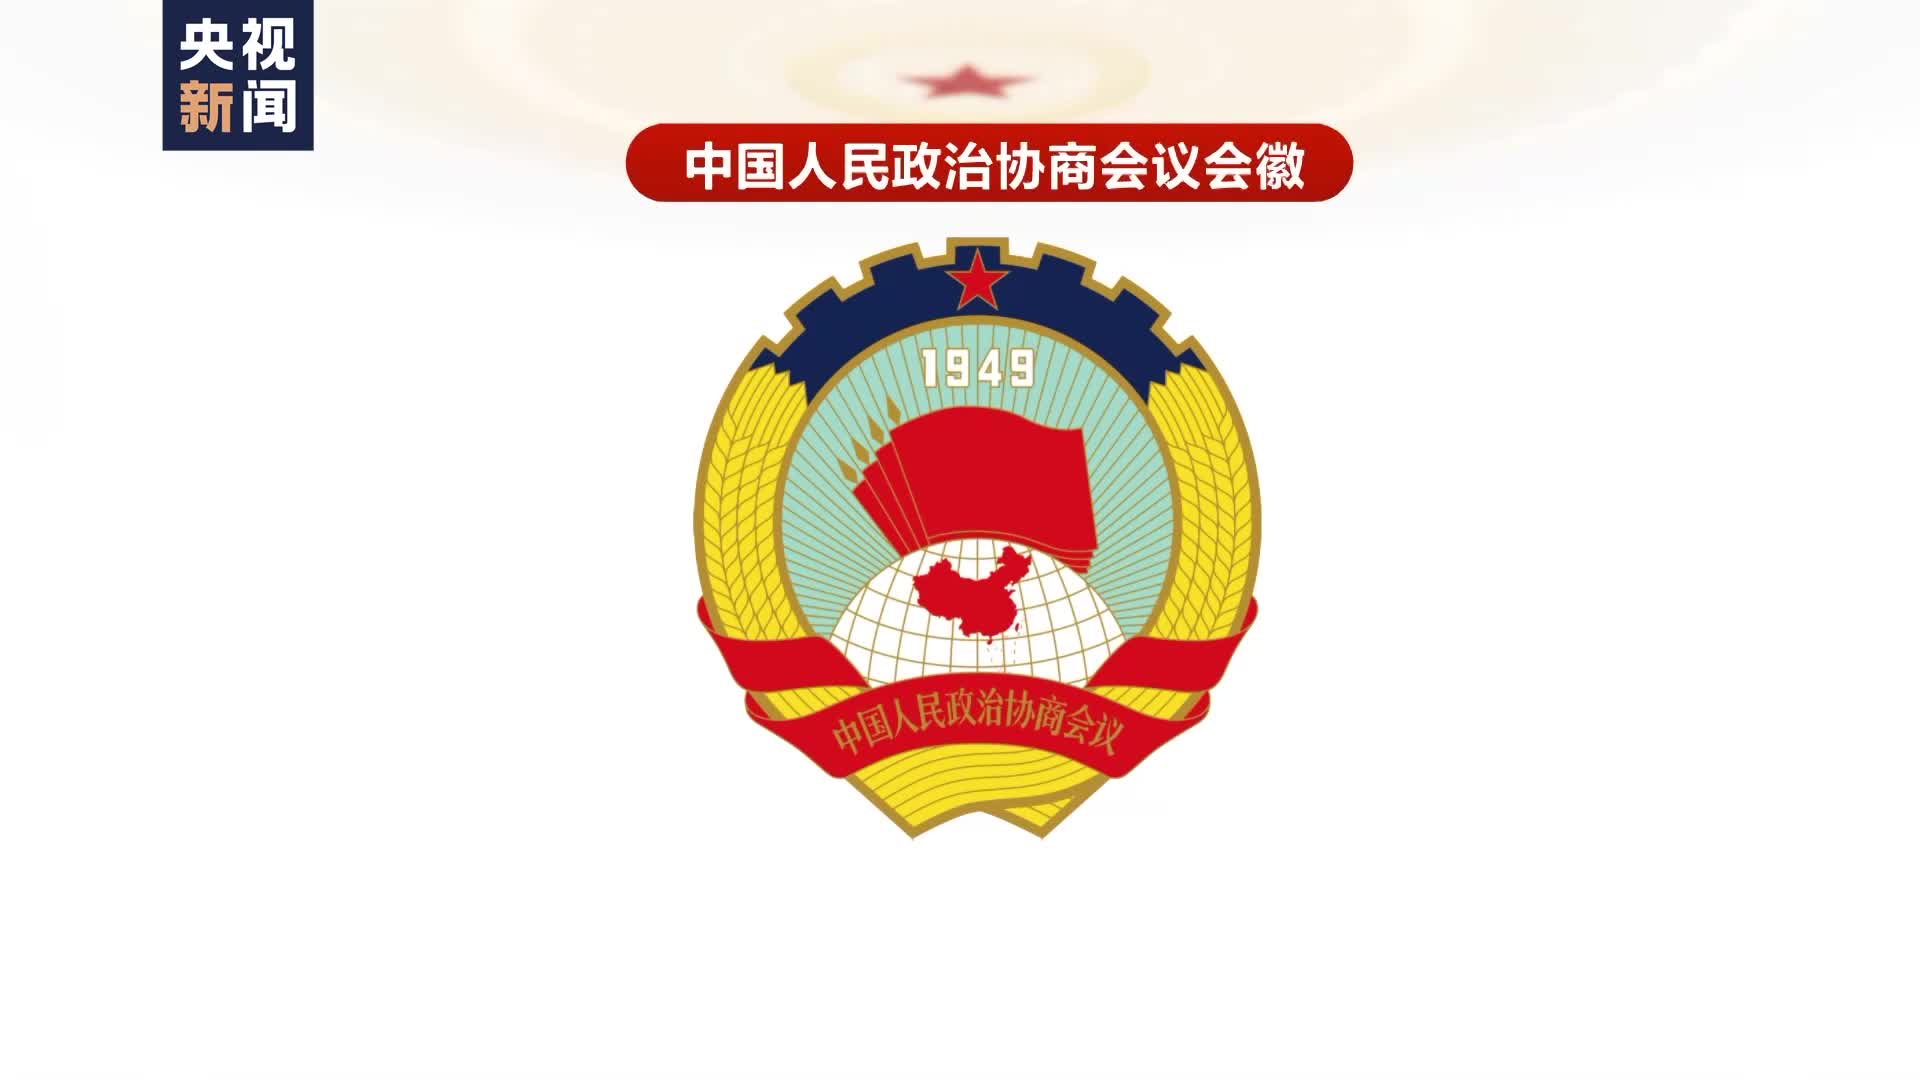 政协会徽沿革图片